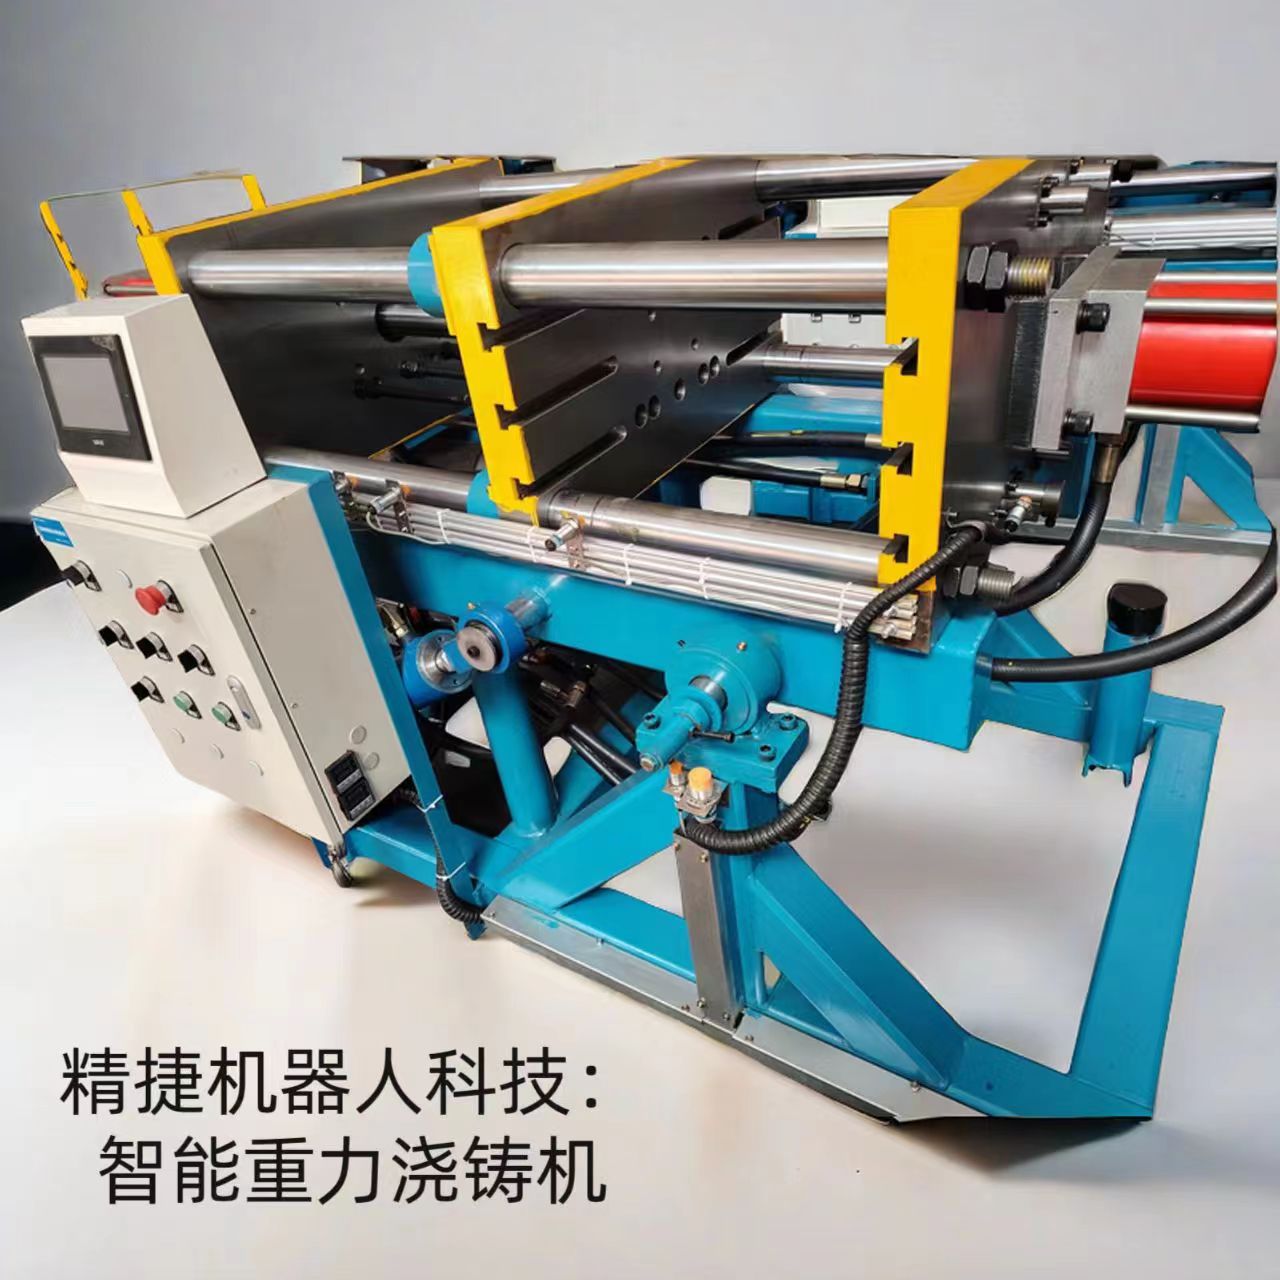 江苏重力浇铸机厂家 翻转式重力浇铸机 铸造自动化设备 铸造设备